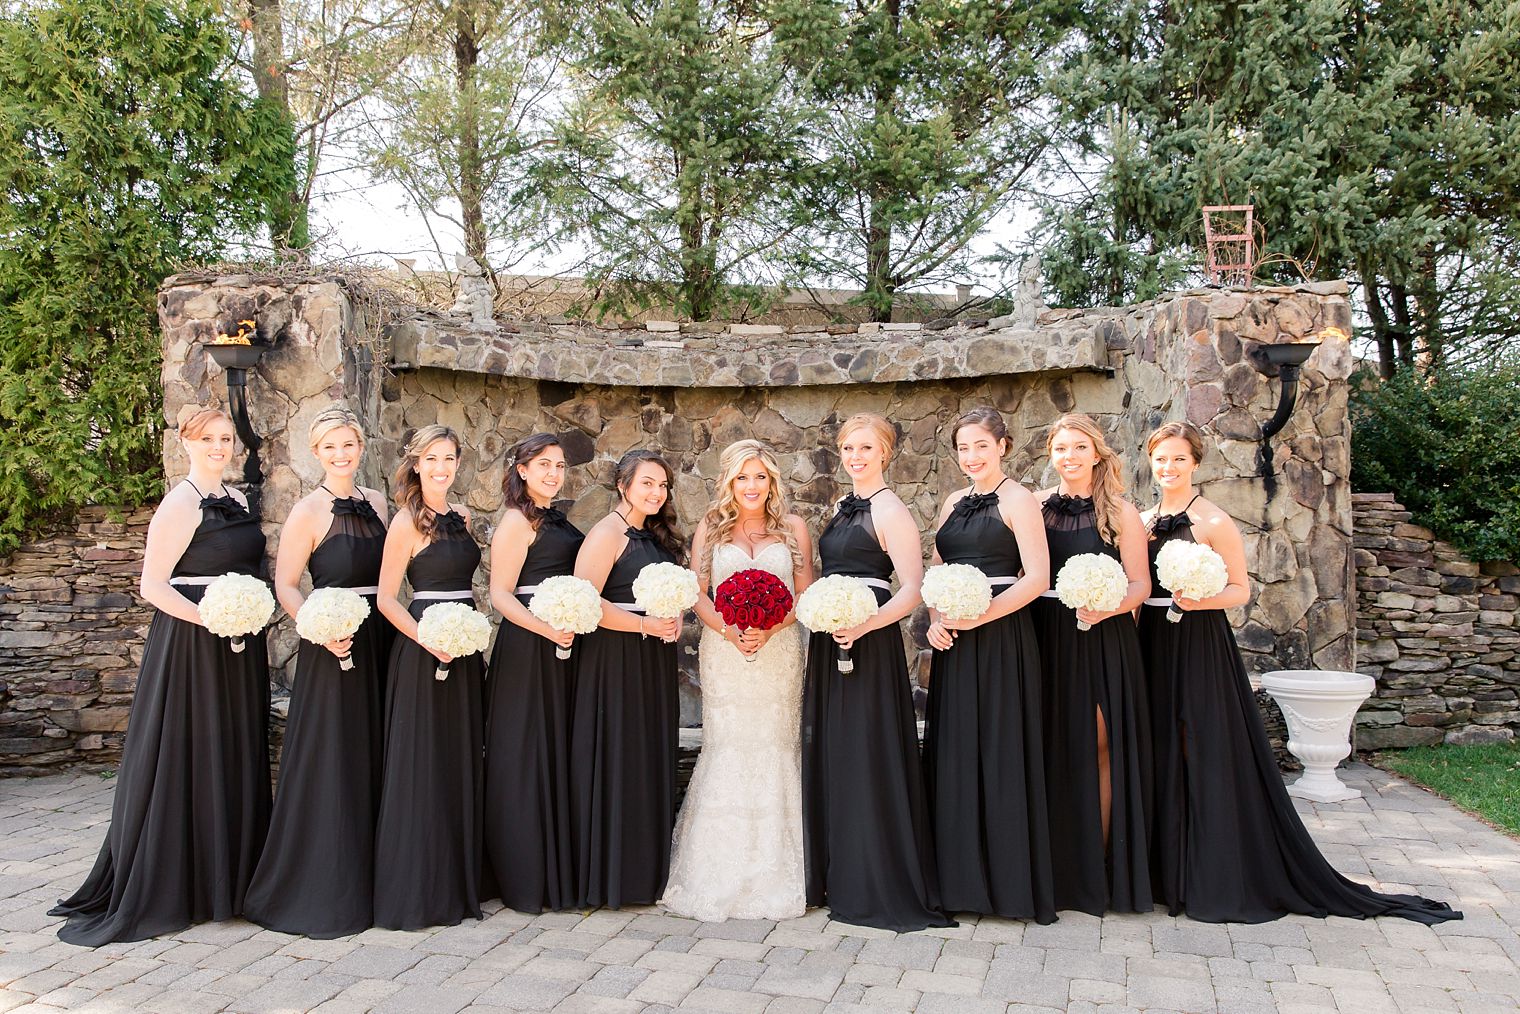 Elegant bridesmaid dresses in black